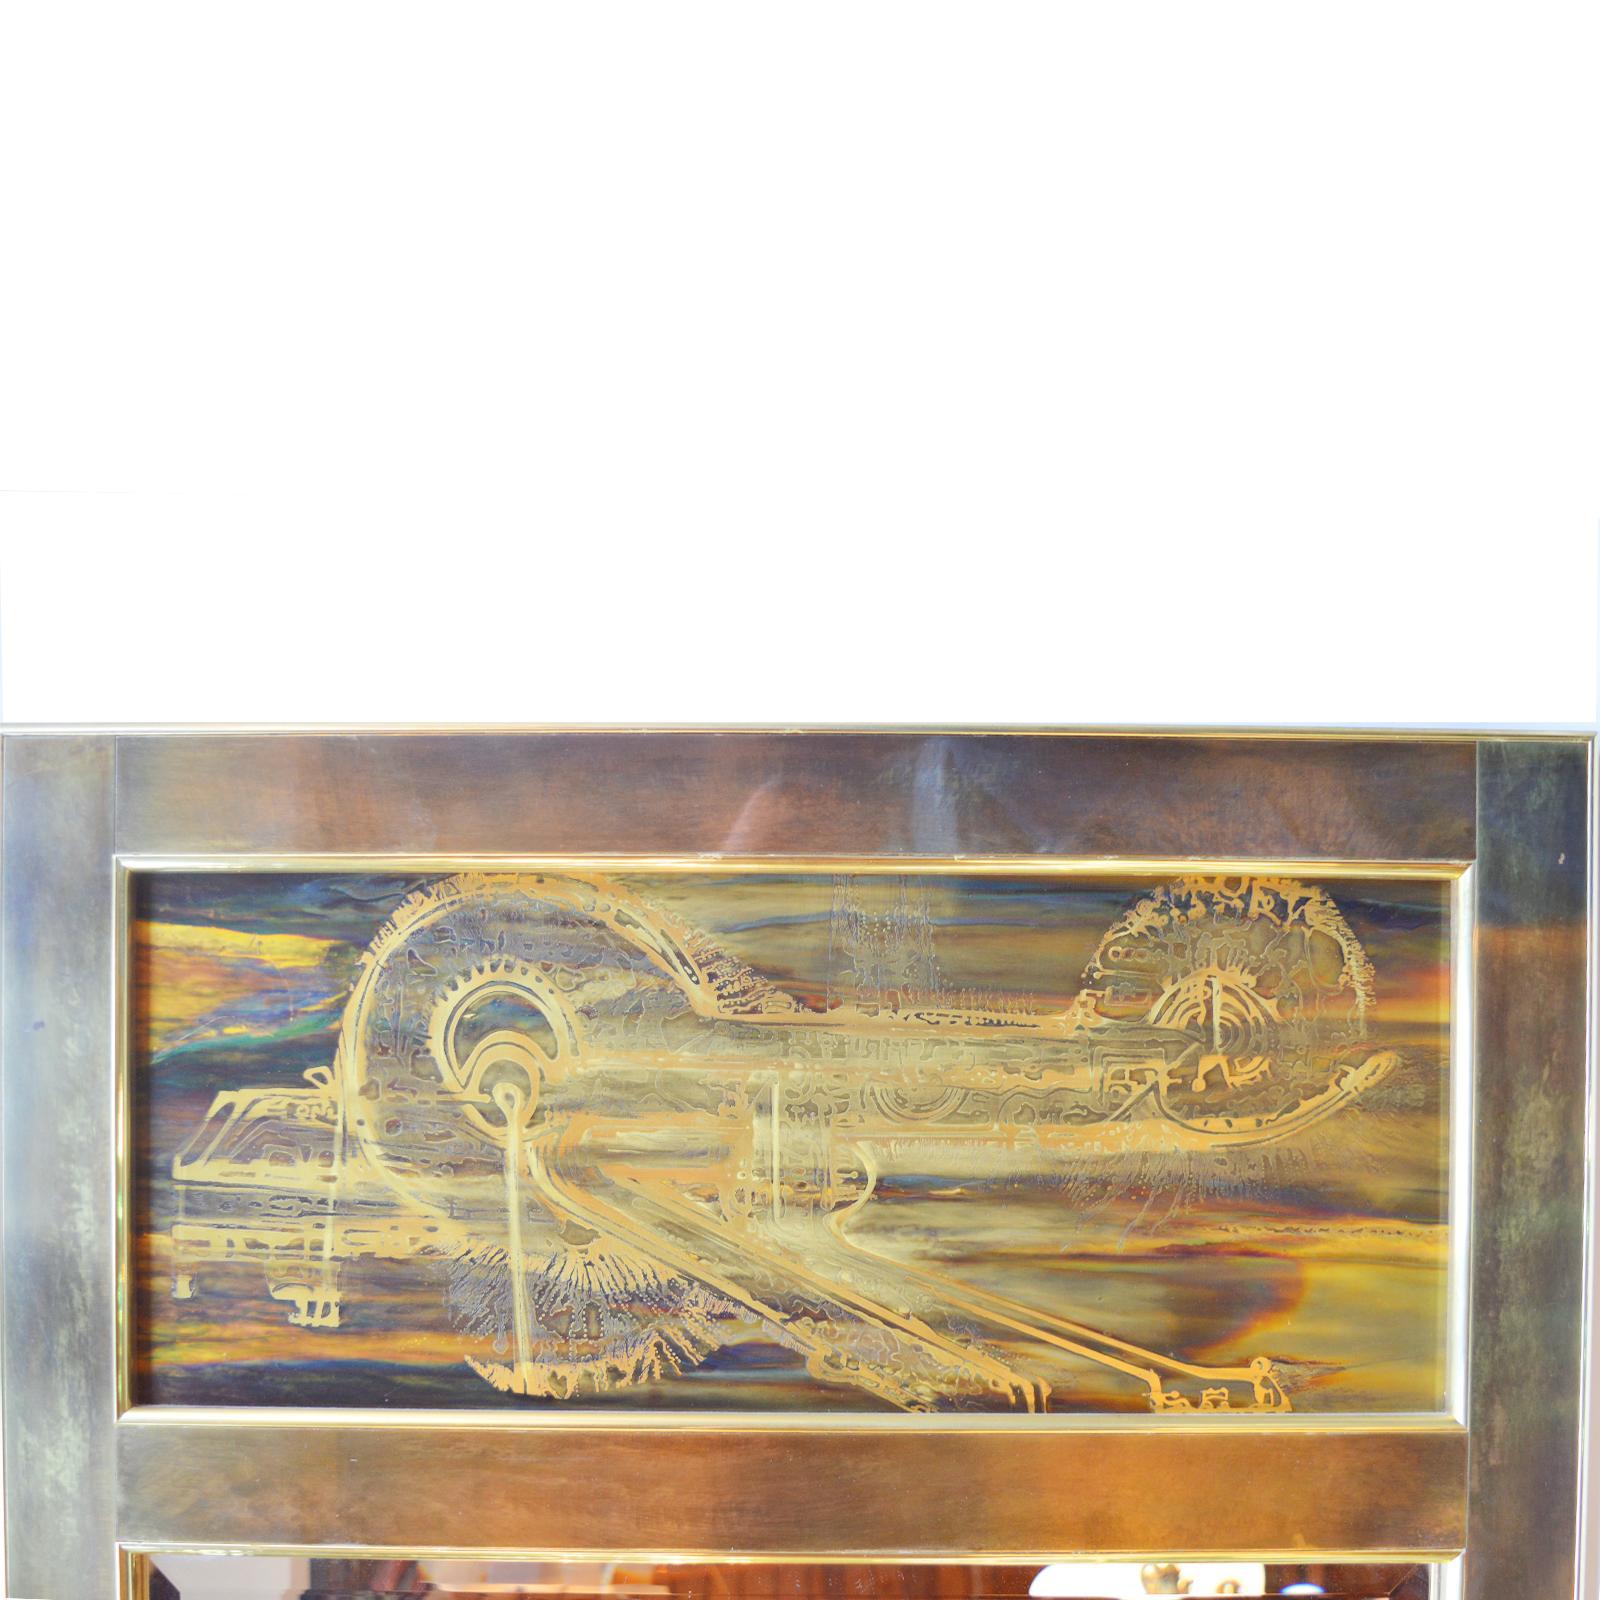 Wandspiegel aus Messing, geätzt von Bernhard Rohne für Mastercraft 1970er Jahre,

Rechteckiger Spiegel im Trumeau-Stil, die obere Platte mit abstraktem, oxidiertem und geätztem Messingdesign über rechteckigem, abgeschrägtem Glas.